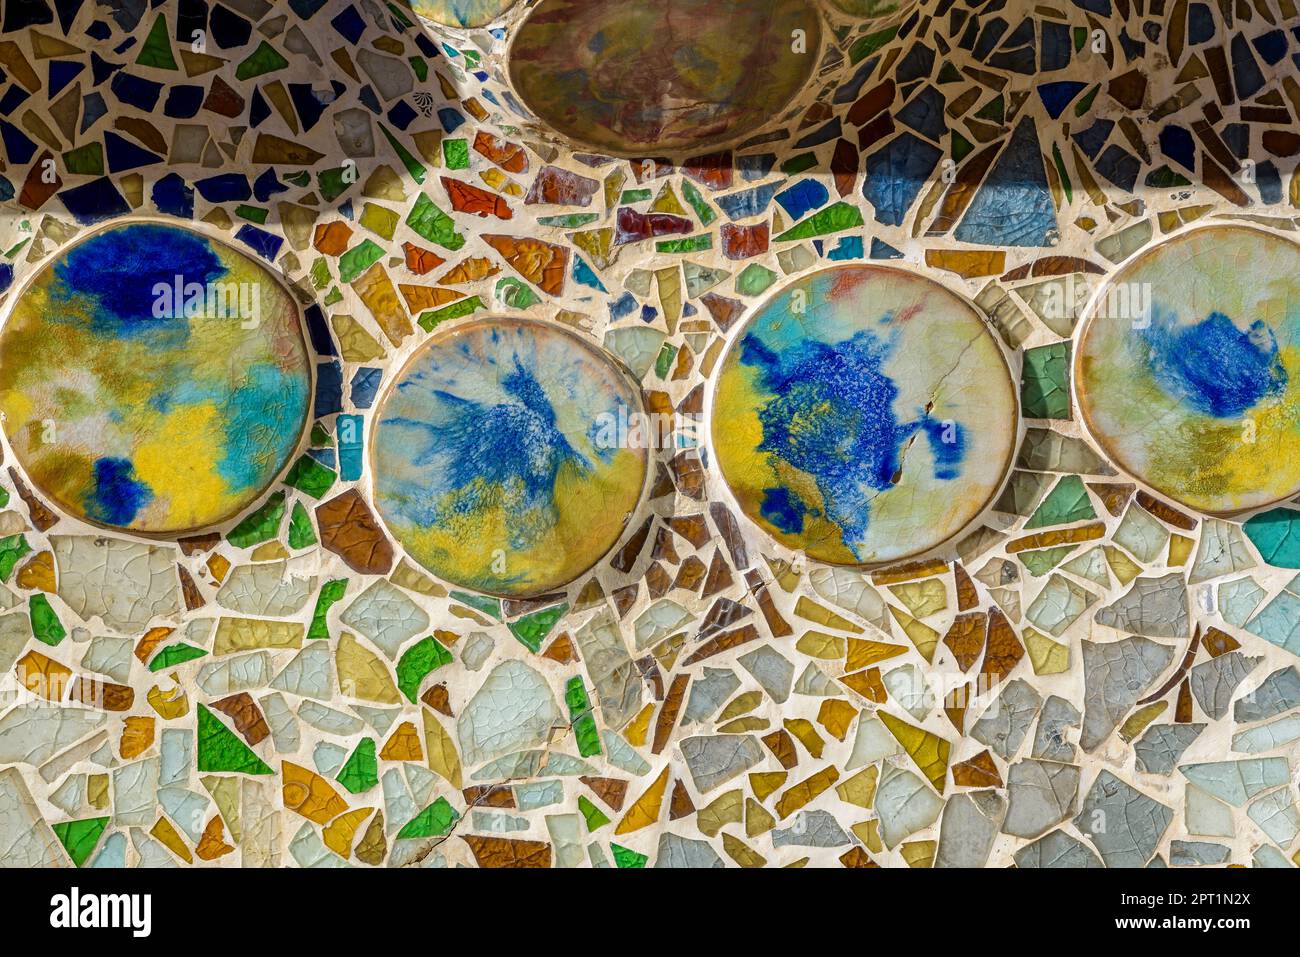 Détails de la mosaïque de Trencadis et de la céramique dans les boîtes de fleurs sur le mur de la cour de Casa Batlló (Barcelone, Catalogne, Espagne) Banque D'Images